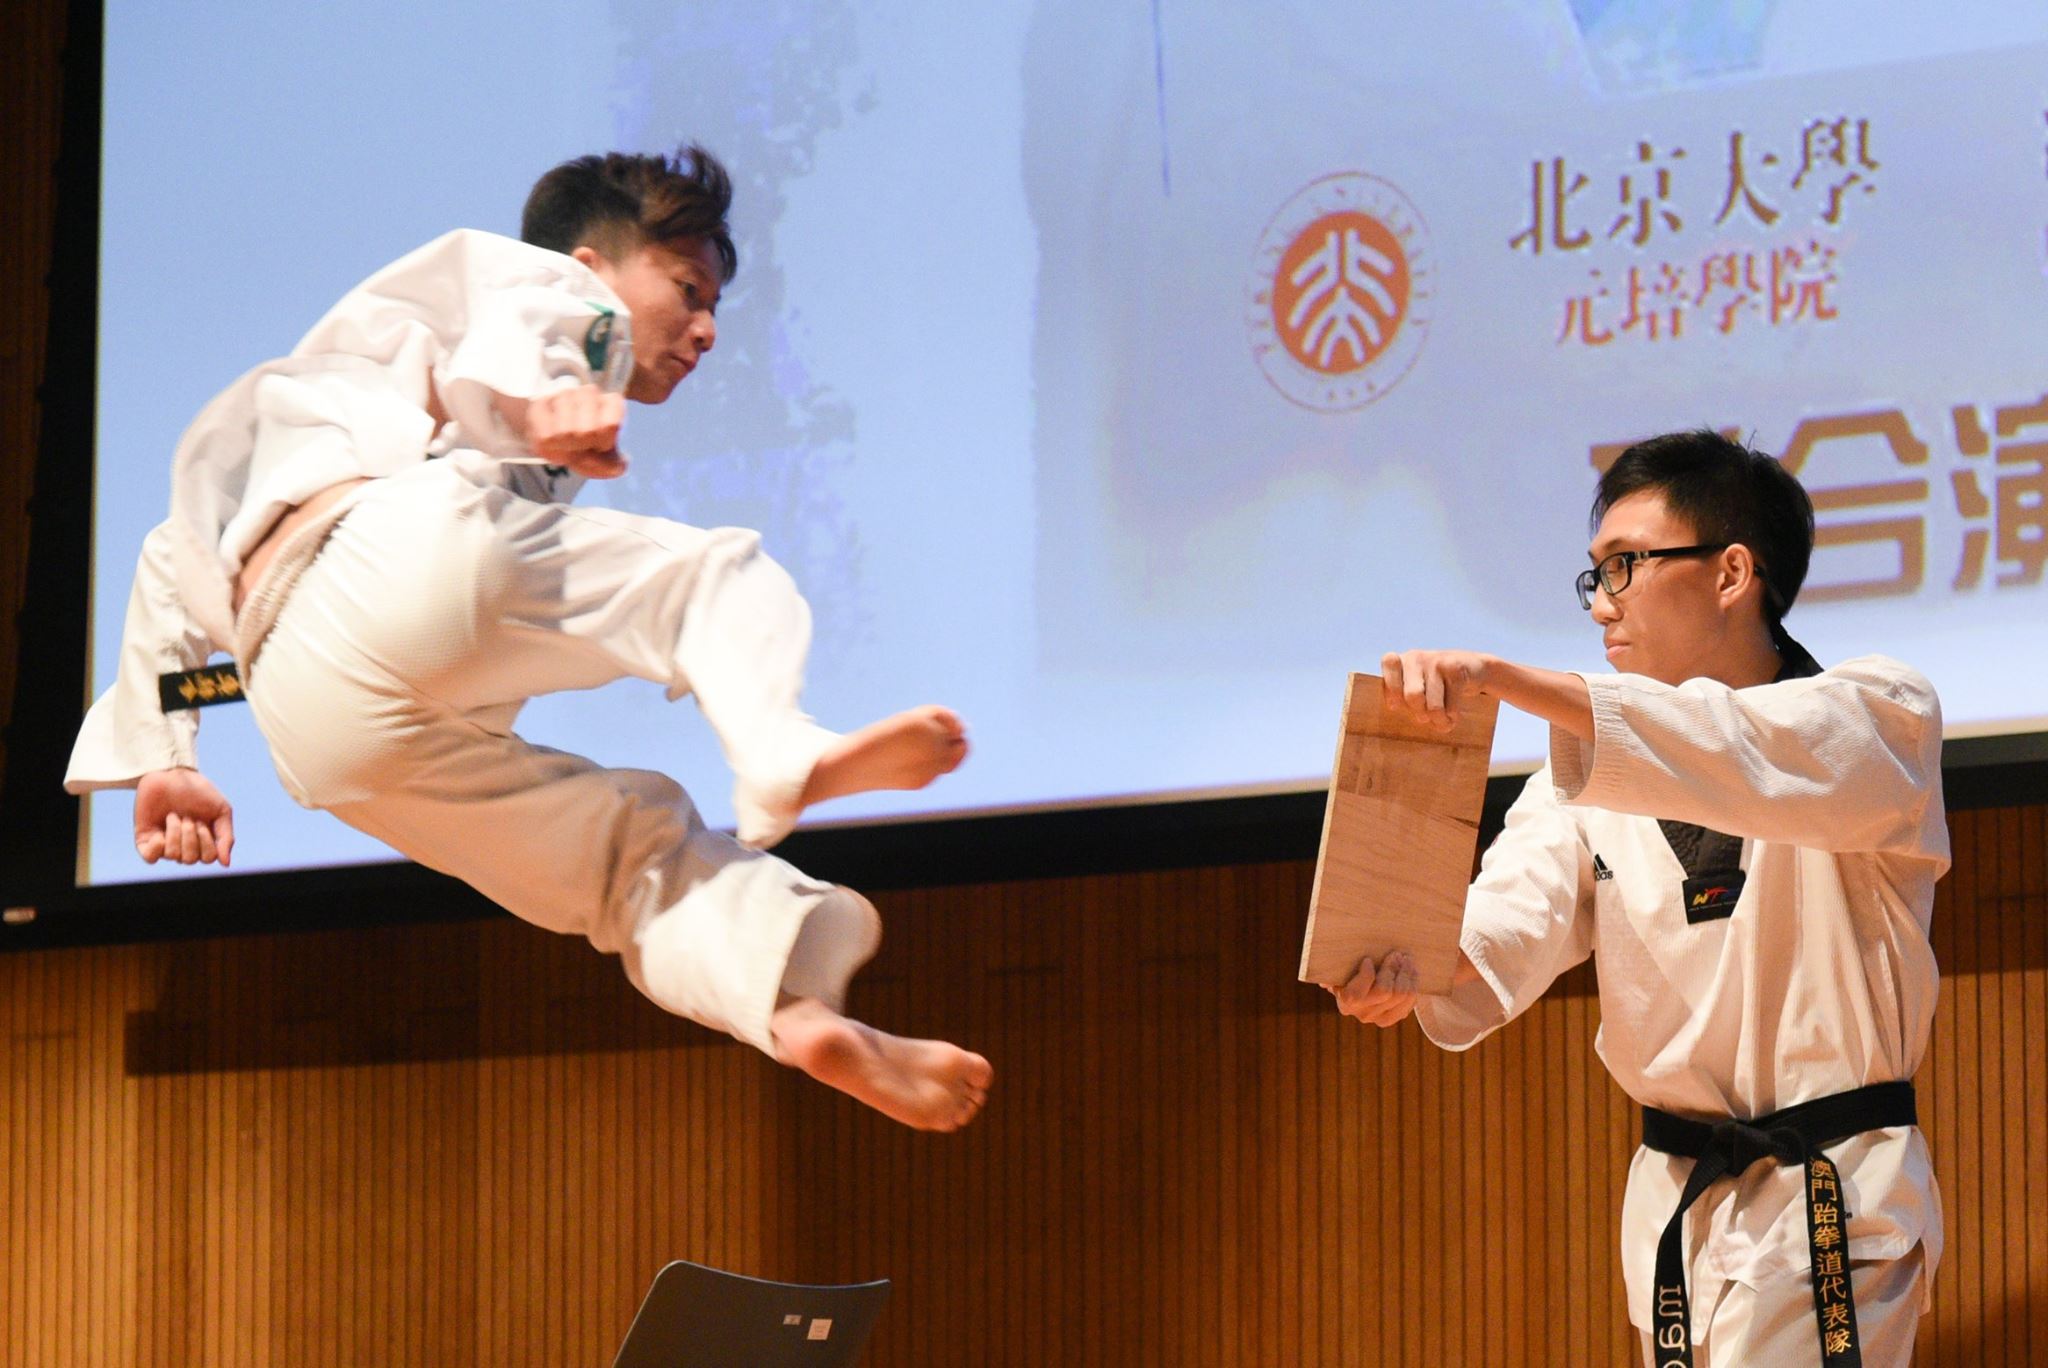 YES-taekwondo-2